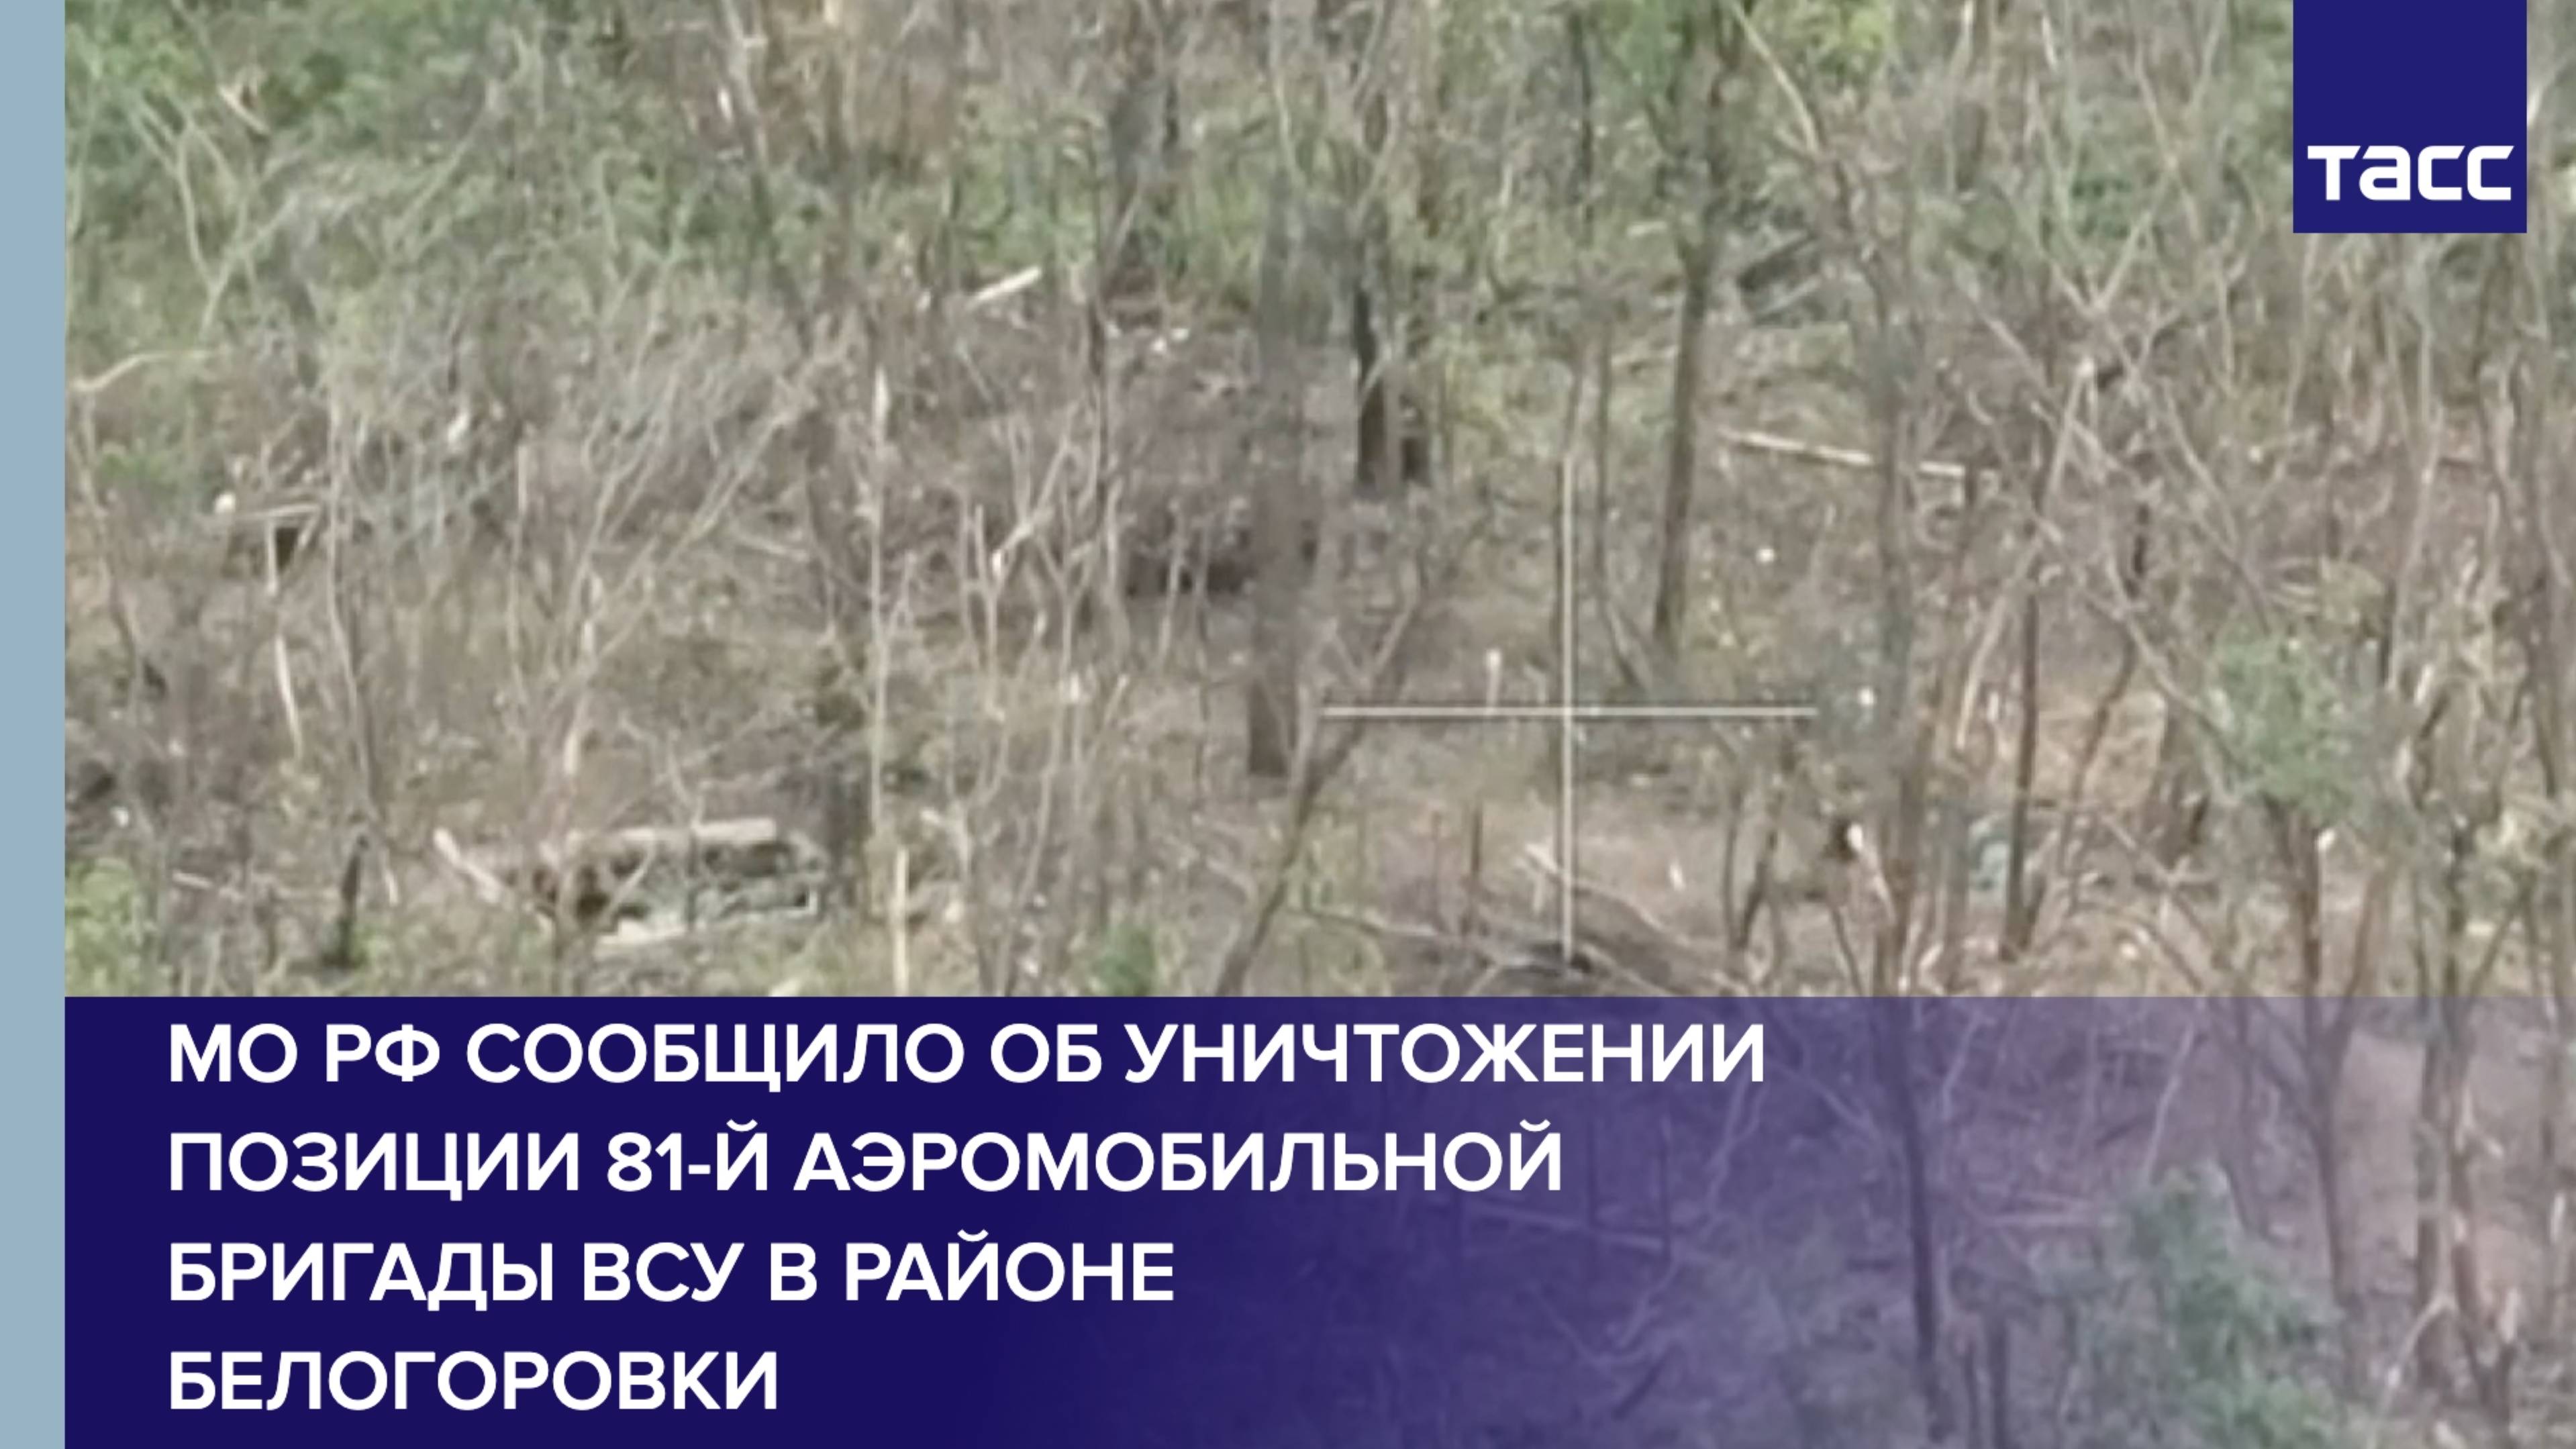 МО РФ сообщило об уничтожении позиции 81-й аэромобильной бригады ВСУ в районе Белогоровки